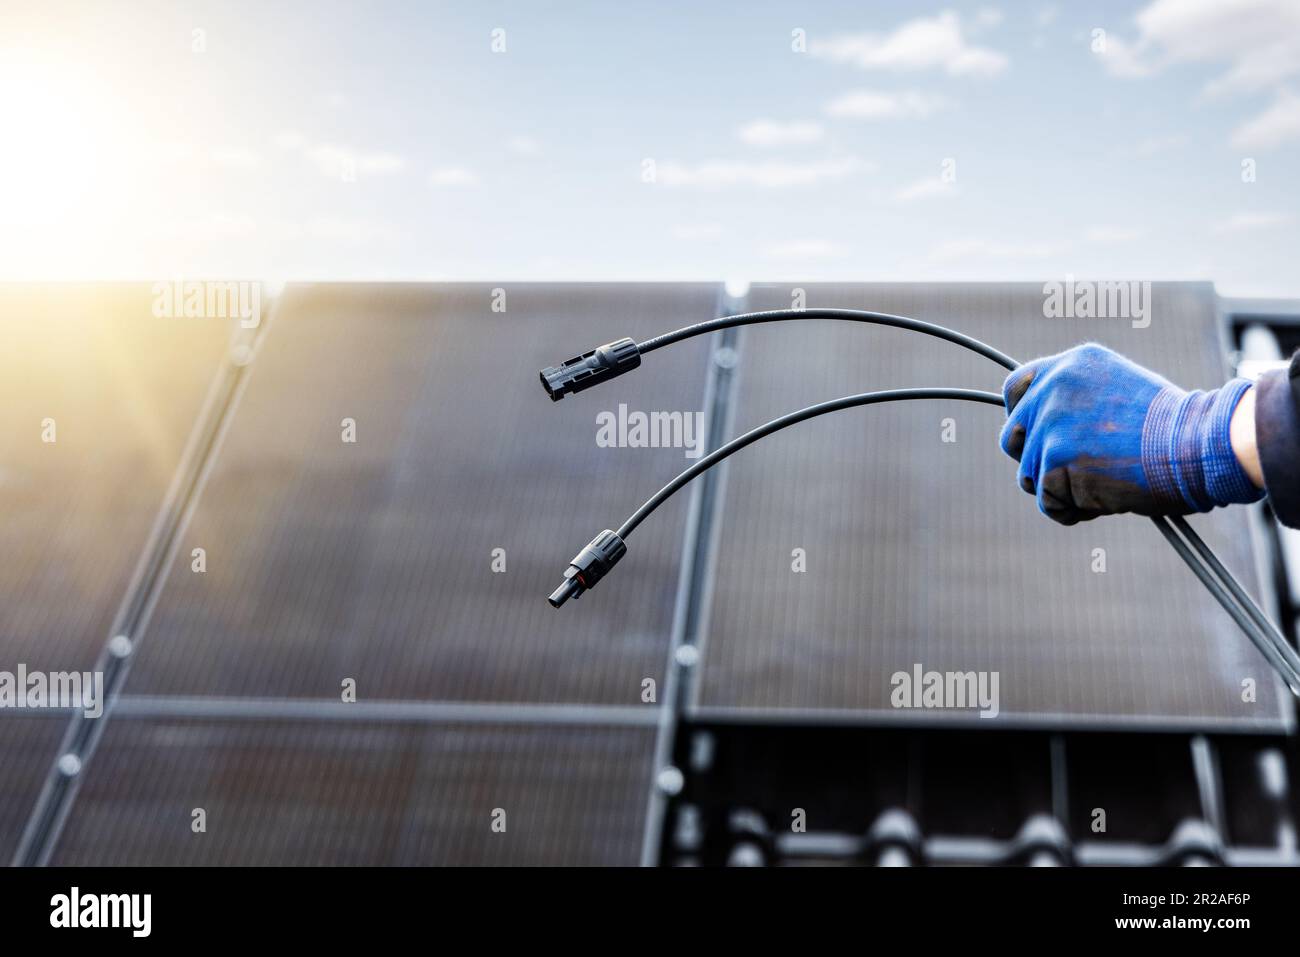 Solarkabel mit MC4-Steckverbindern, die von einer Hand gehalten werden Stockfoto